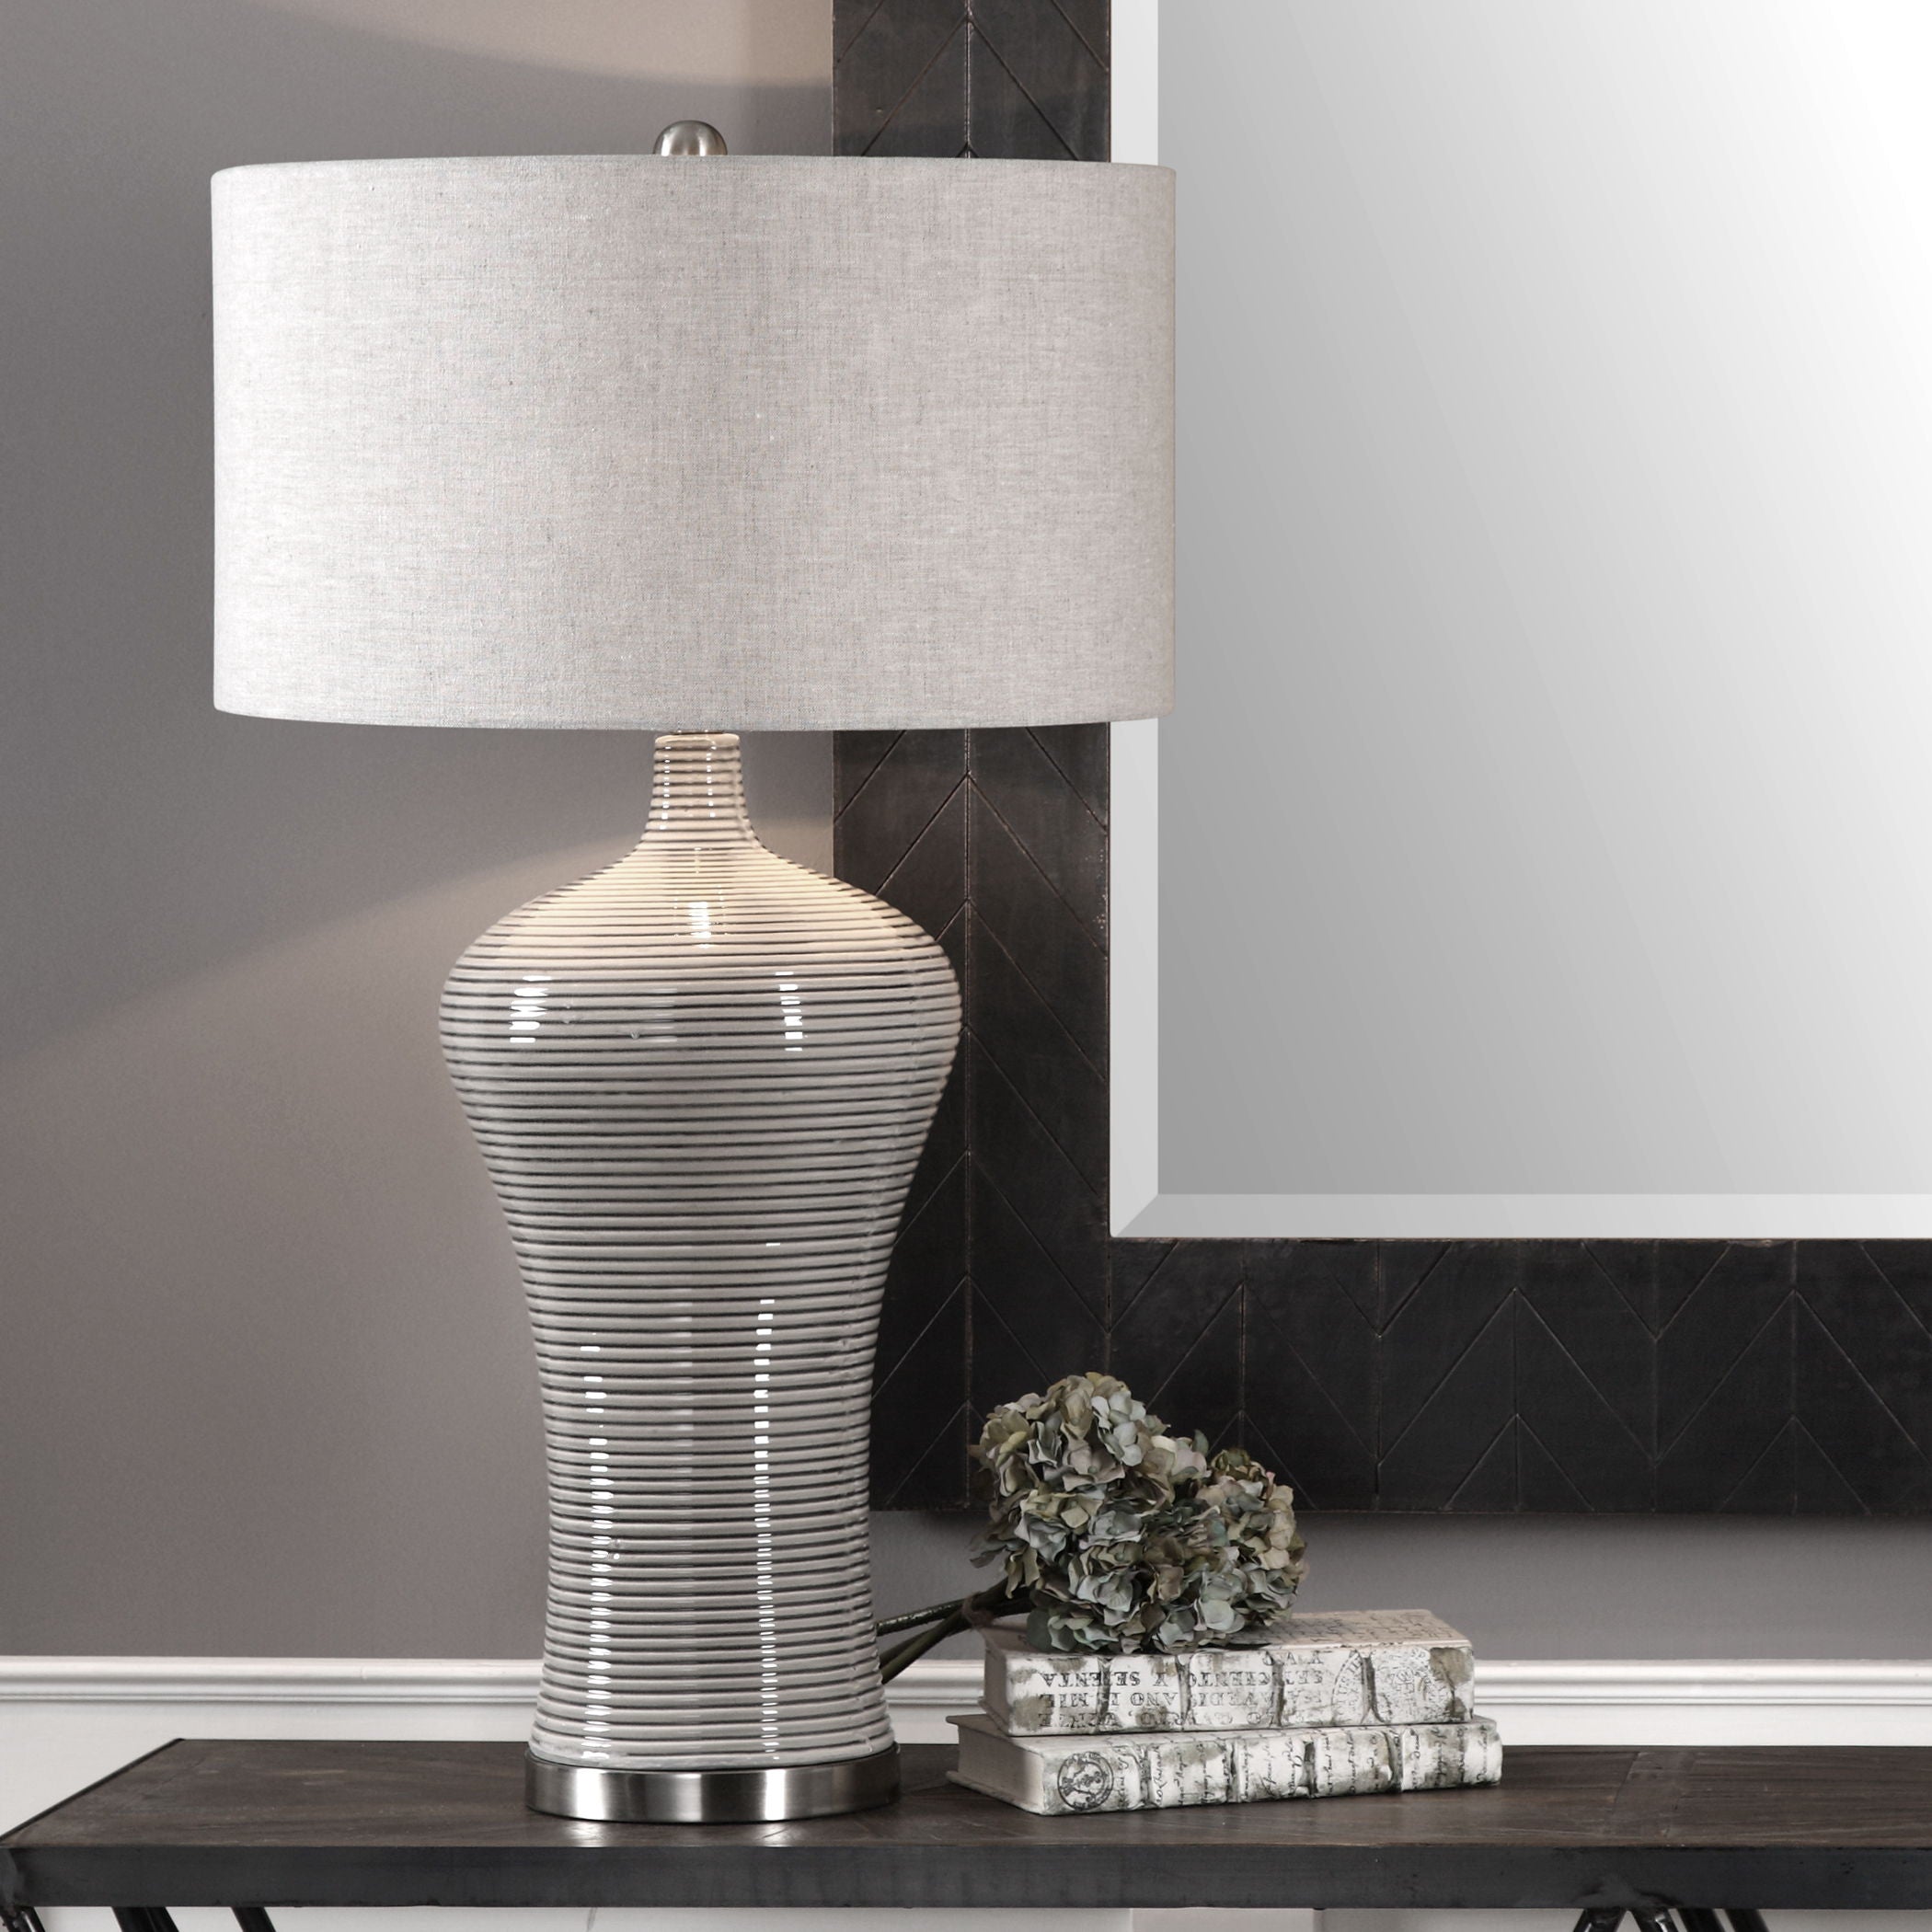 Dubrava - Table Lamp - Light Gray